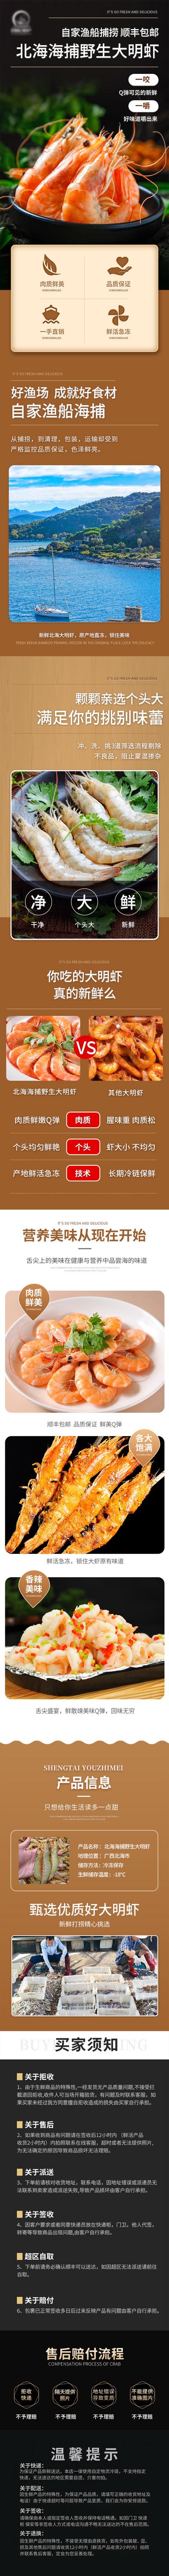 南门网 电商详情页 淘宝详情页 食品 海鲜 虾 大明虾